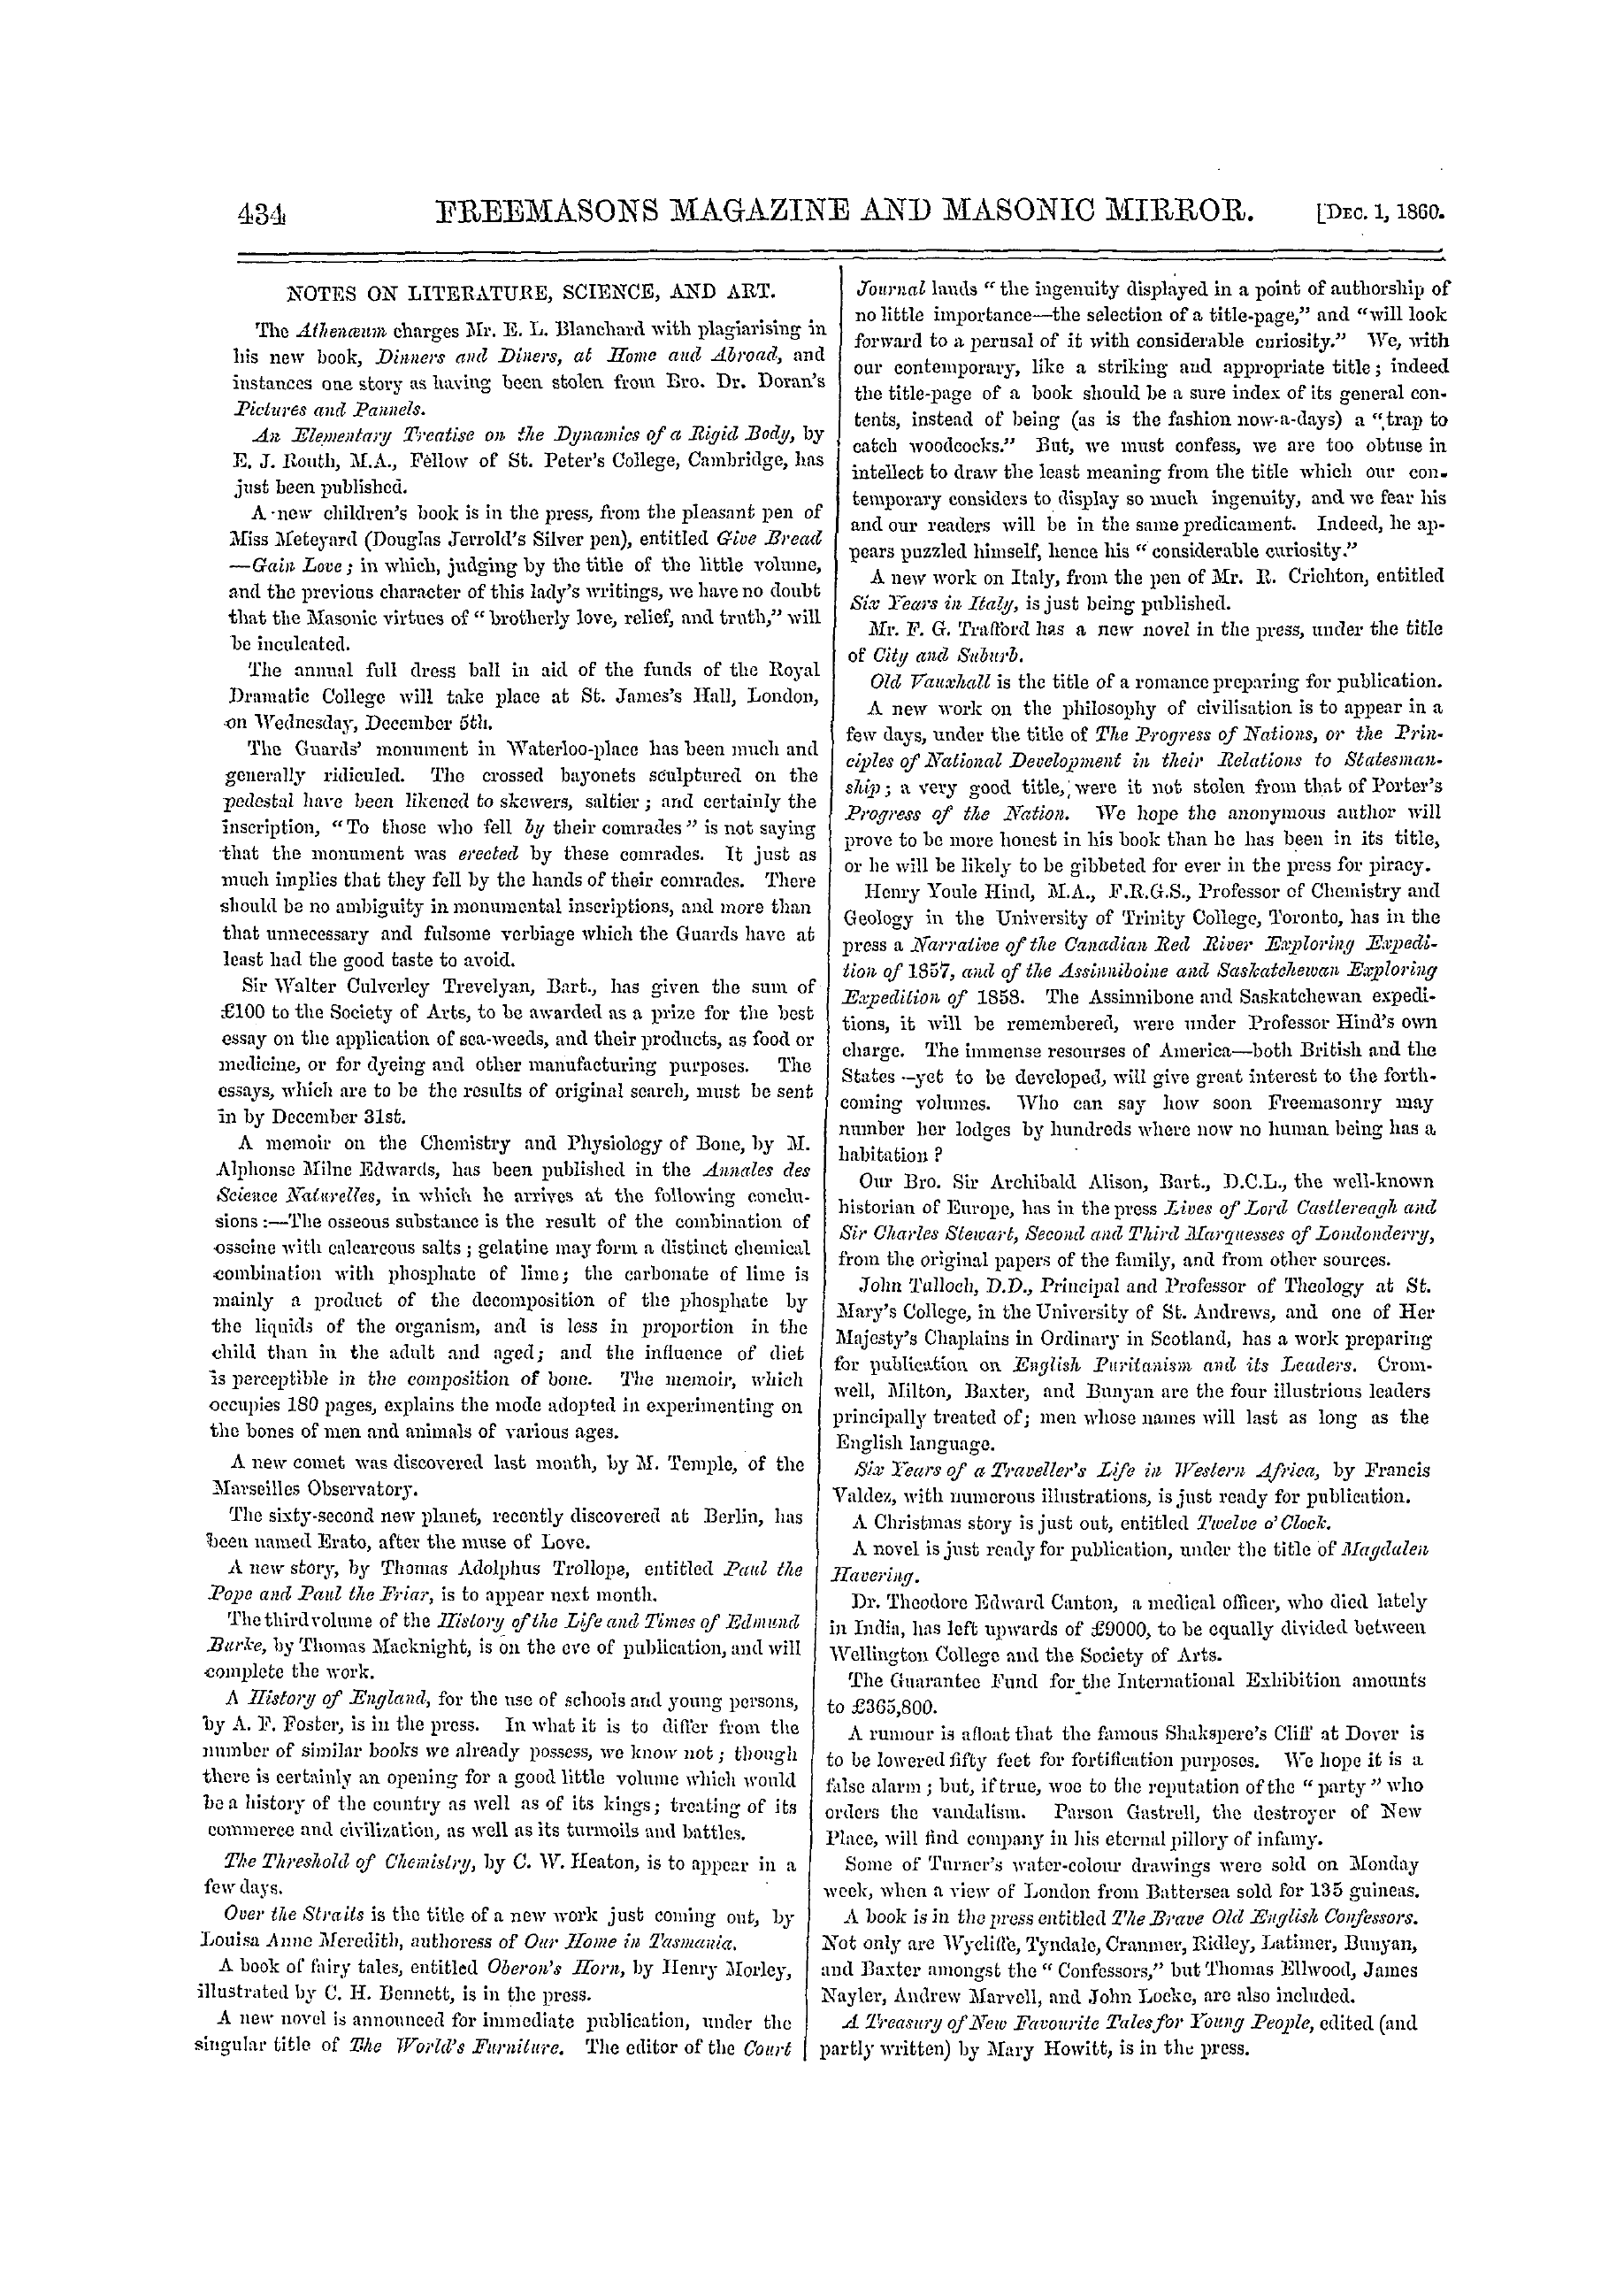 The Freemasons' Monthly Magazine: 1860-12-01: 14